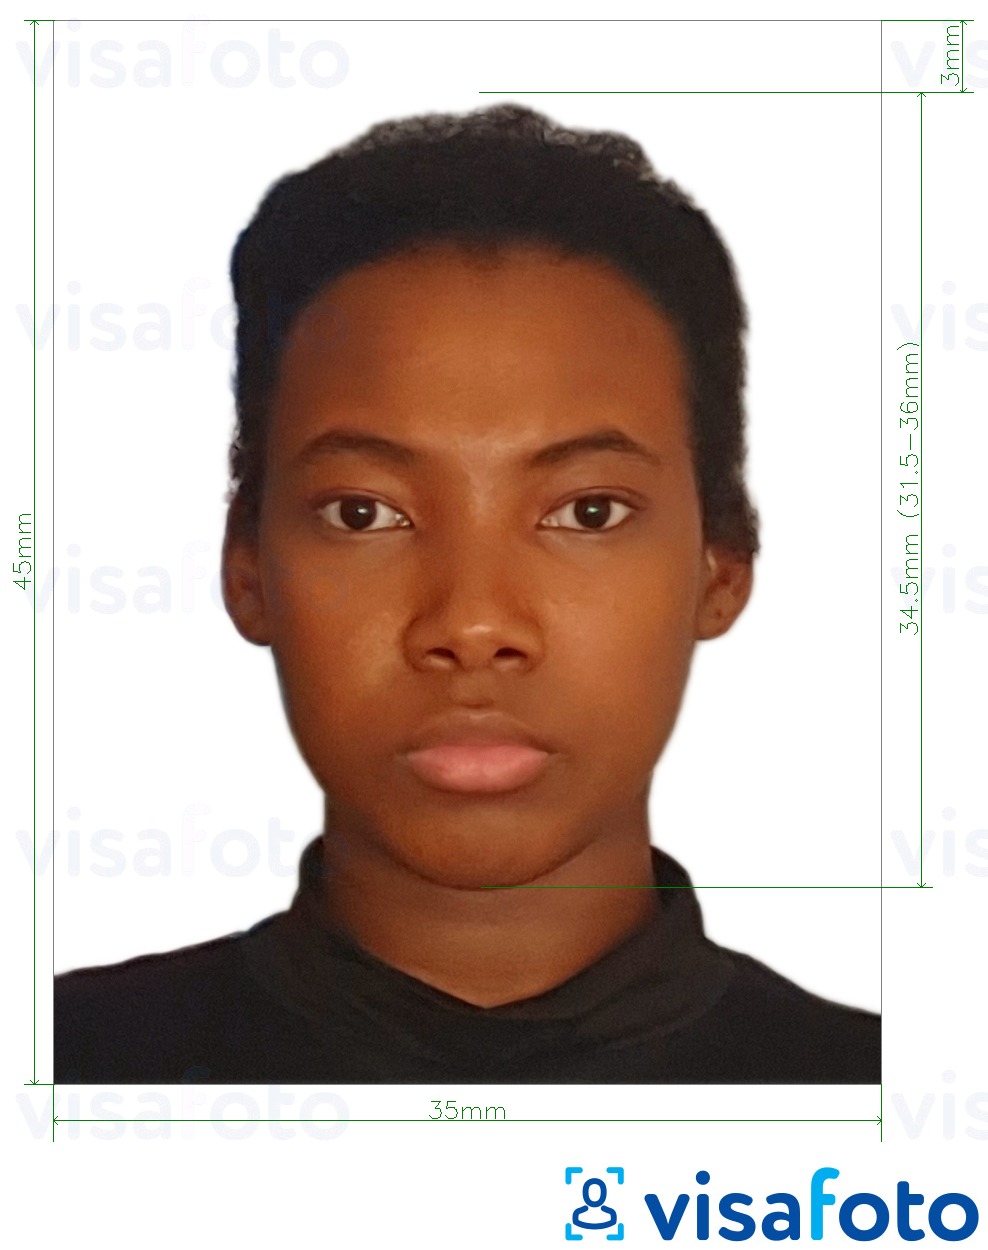 Primjer fotografije za Ganska putovnica 3,5x4,5 cm (35x45 mm) s točno određenom veličinom